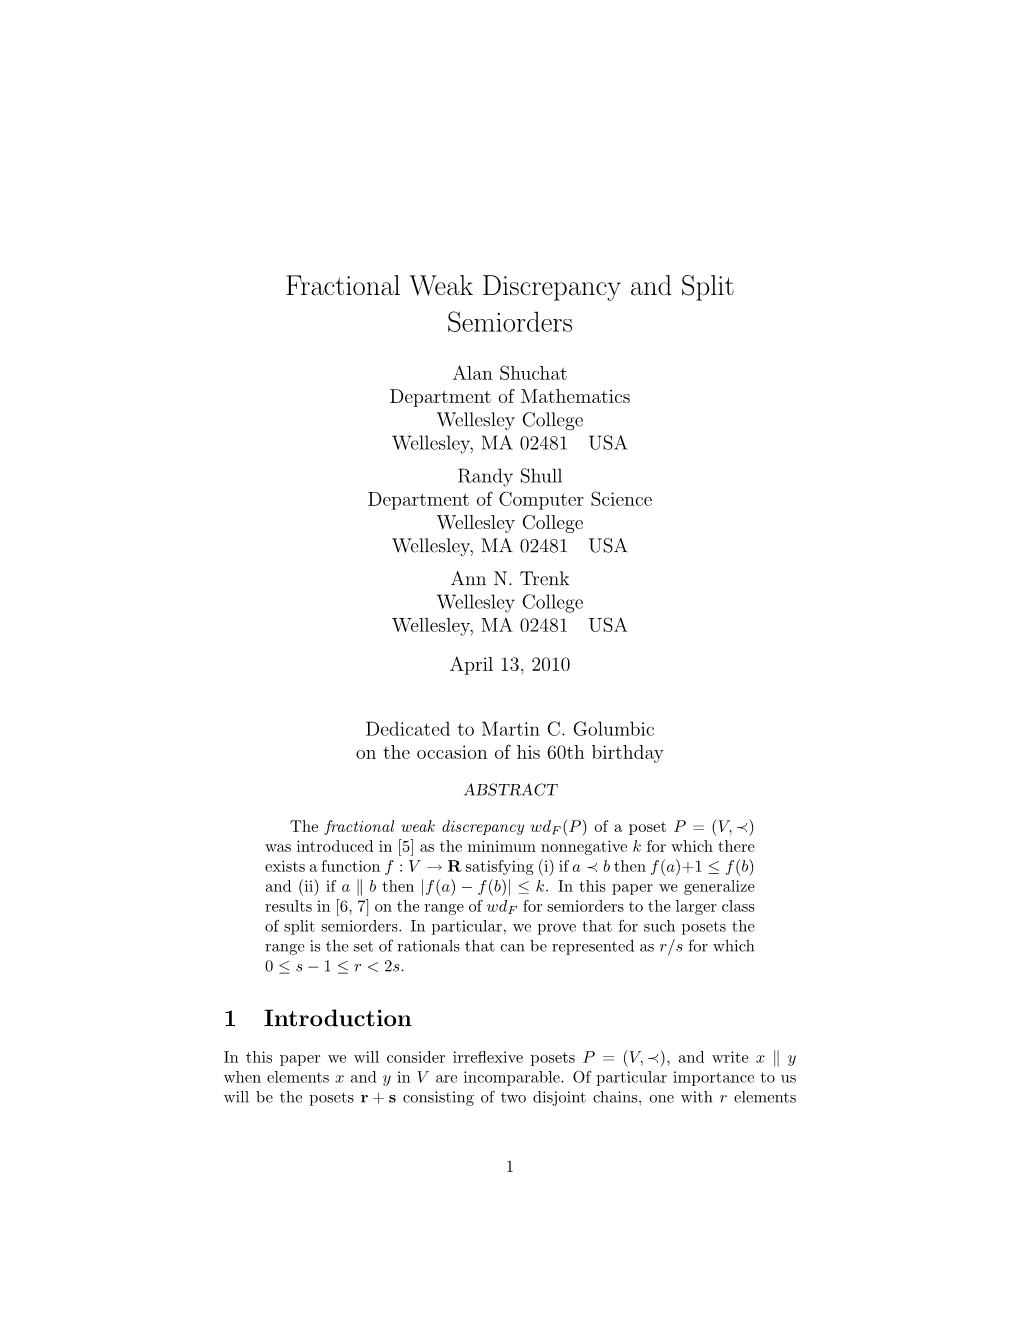 Fractional Weak Discrepancy and Split Semiorders